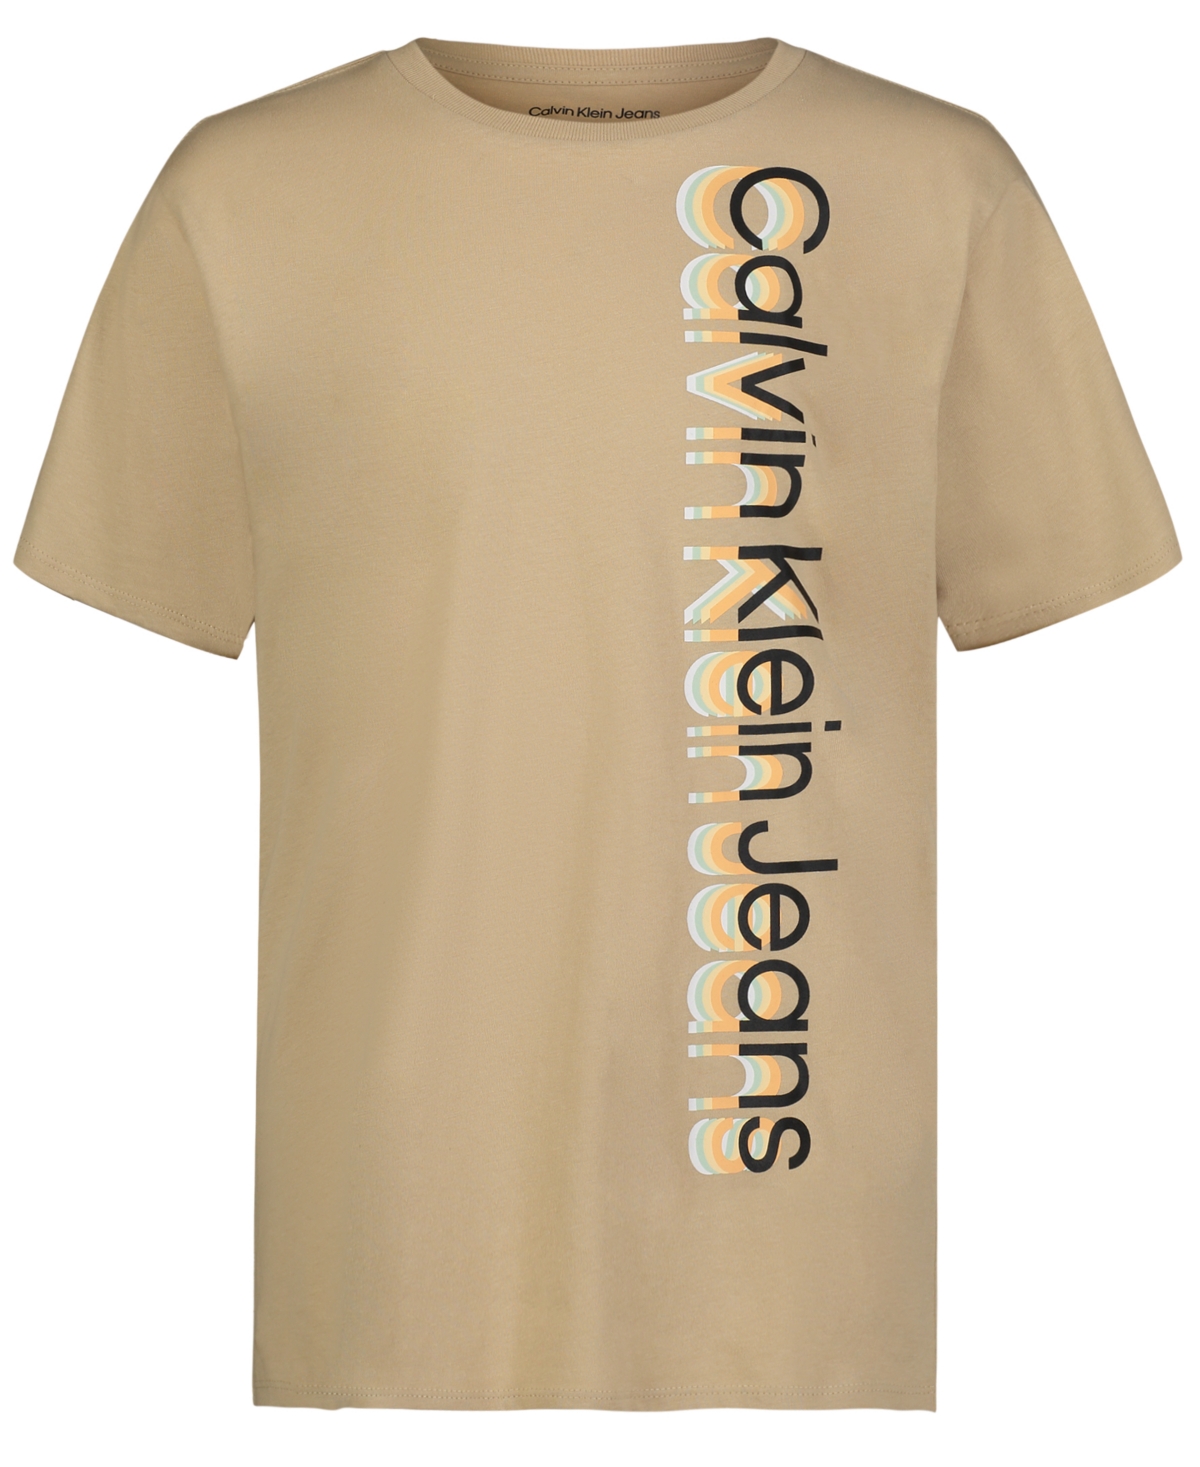 Calvin Klein Kids' Big Boys Layered Short Sleeve T-shirt In Safari